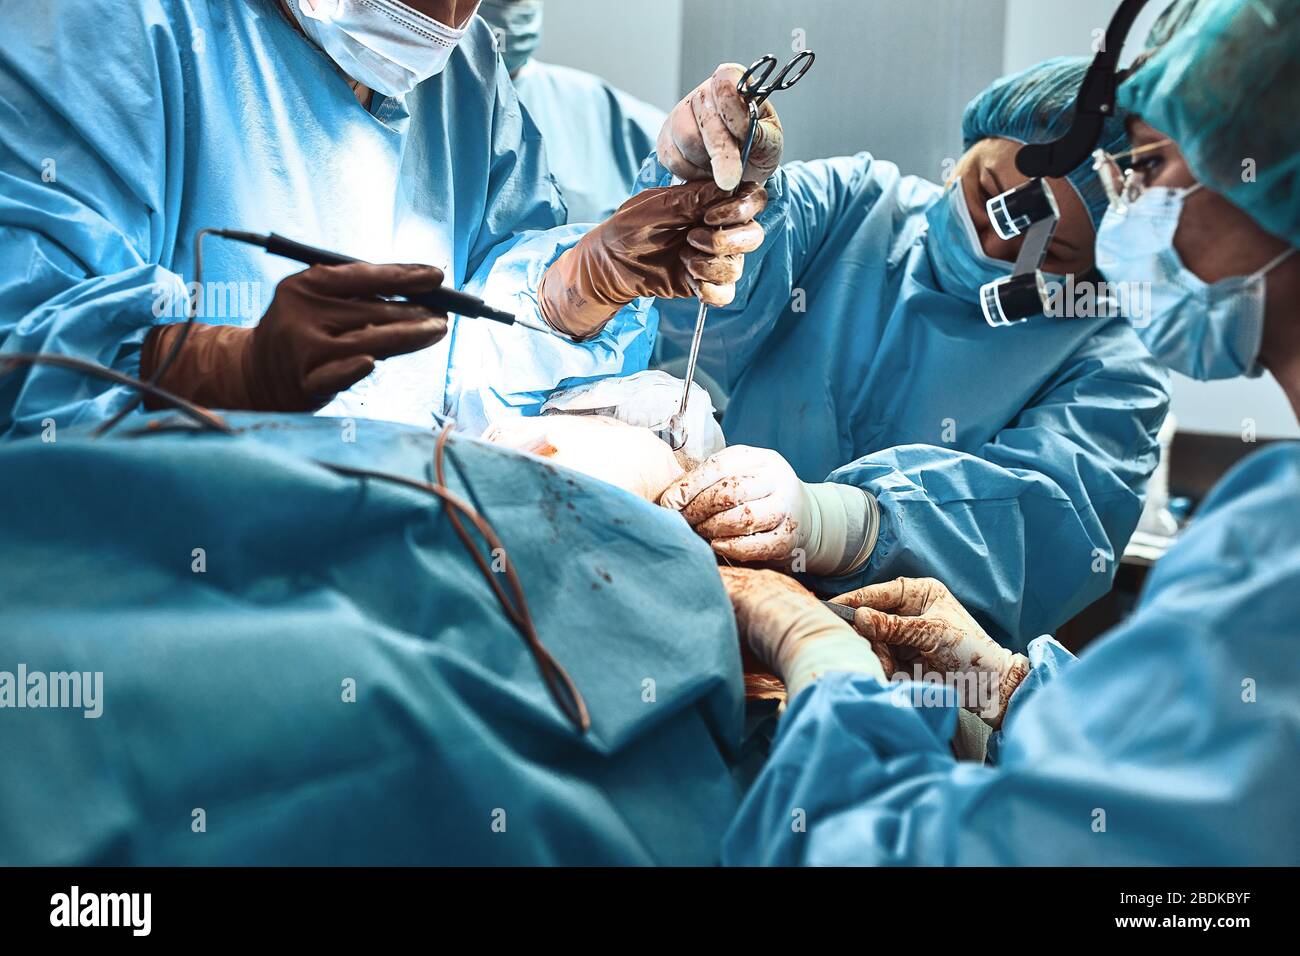 Une équipe de chirurgiens se bat pour la vie, une opération réelle, des émotions réelles. L'équipe de soins intensifs se bat pour la vie du patient. Sauver des vies Banque D'Images